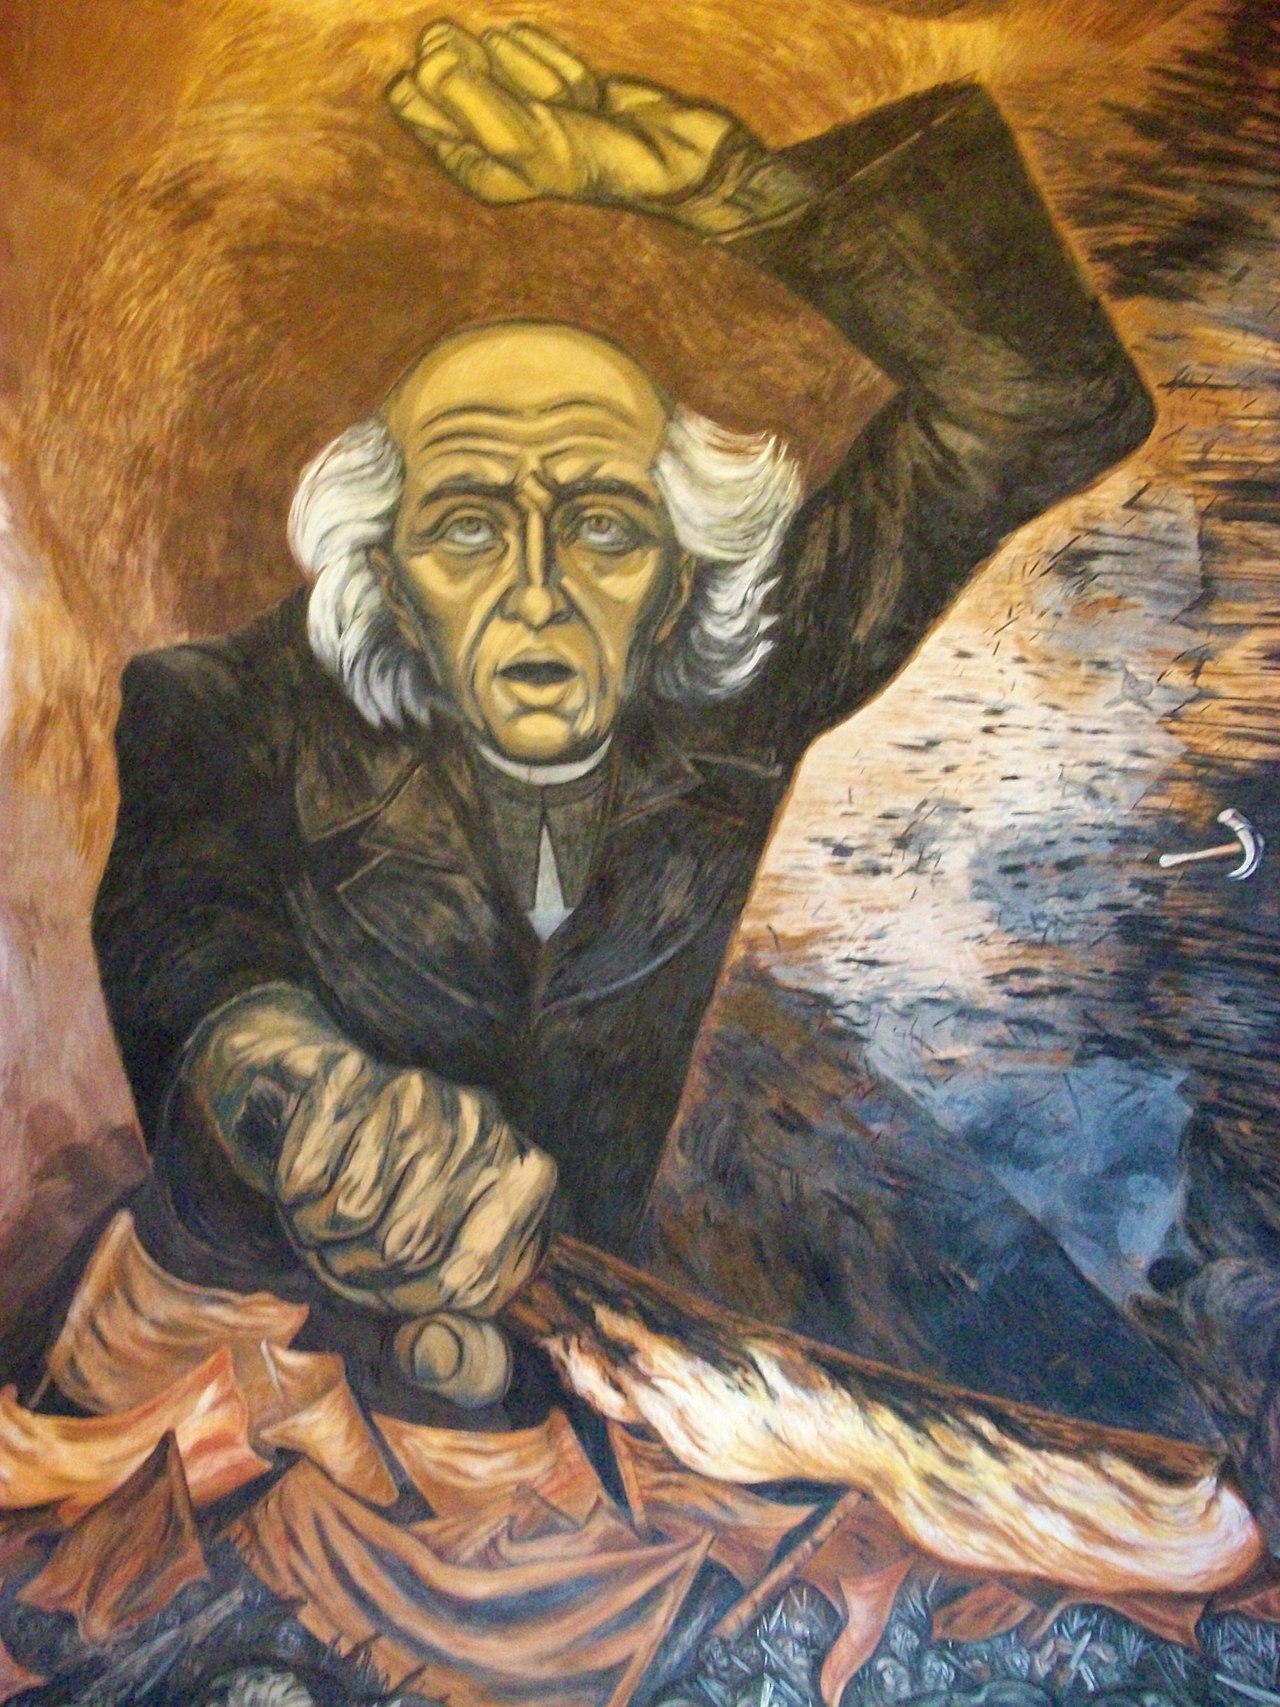 Representación de Miguel Hidalgo realizada por José Clemente Orozco, uno de los principales exponentes del muralismo mexicano. Palacio de Gobierno del Estado de Jalisco, Guadalajara.